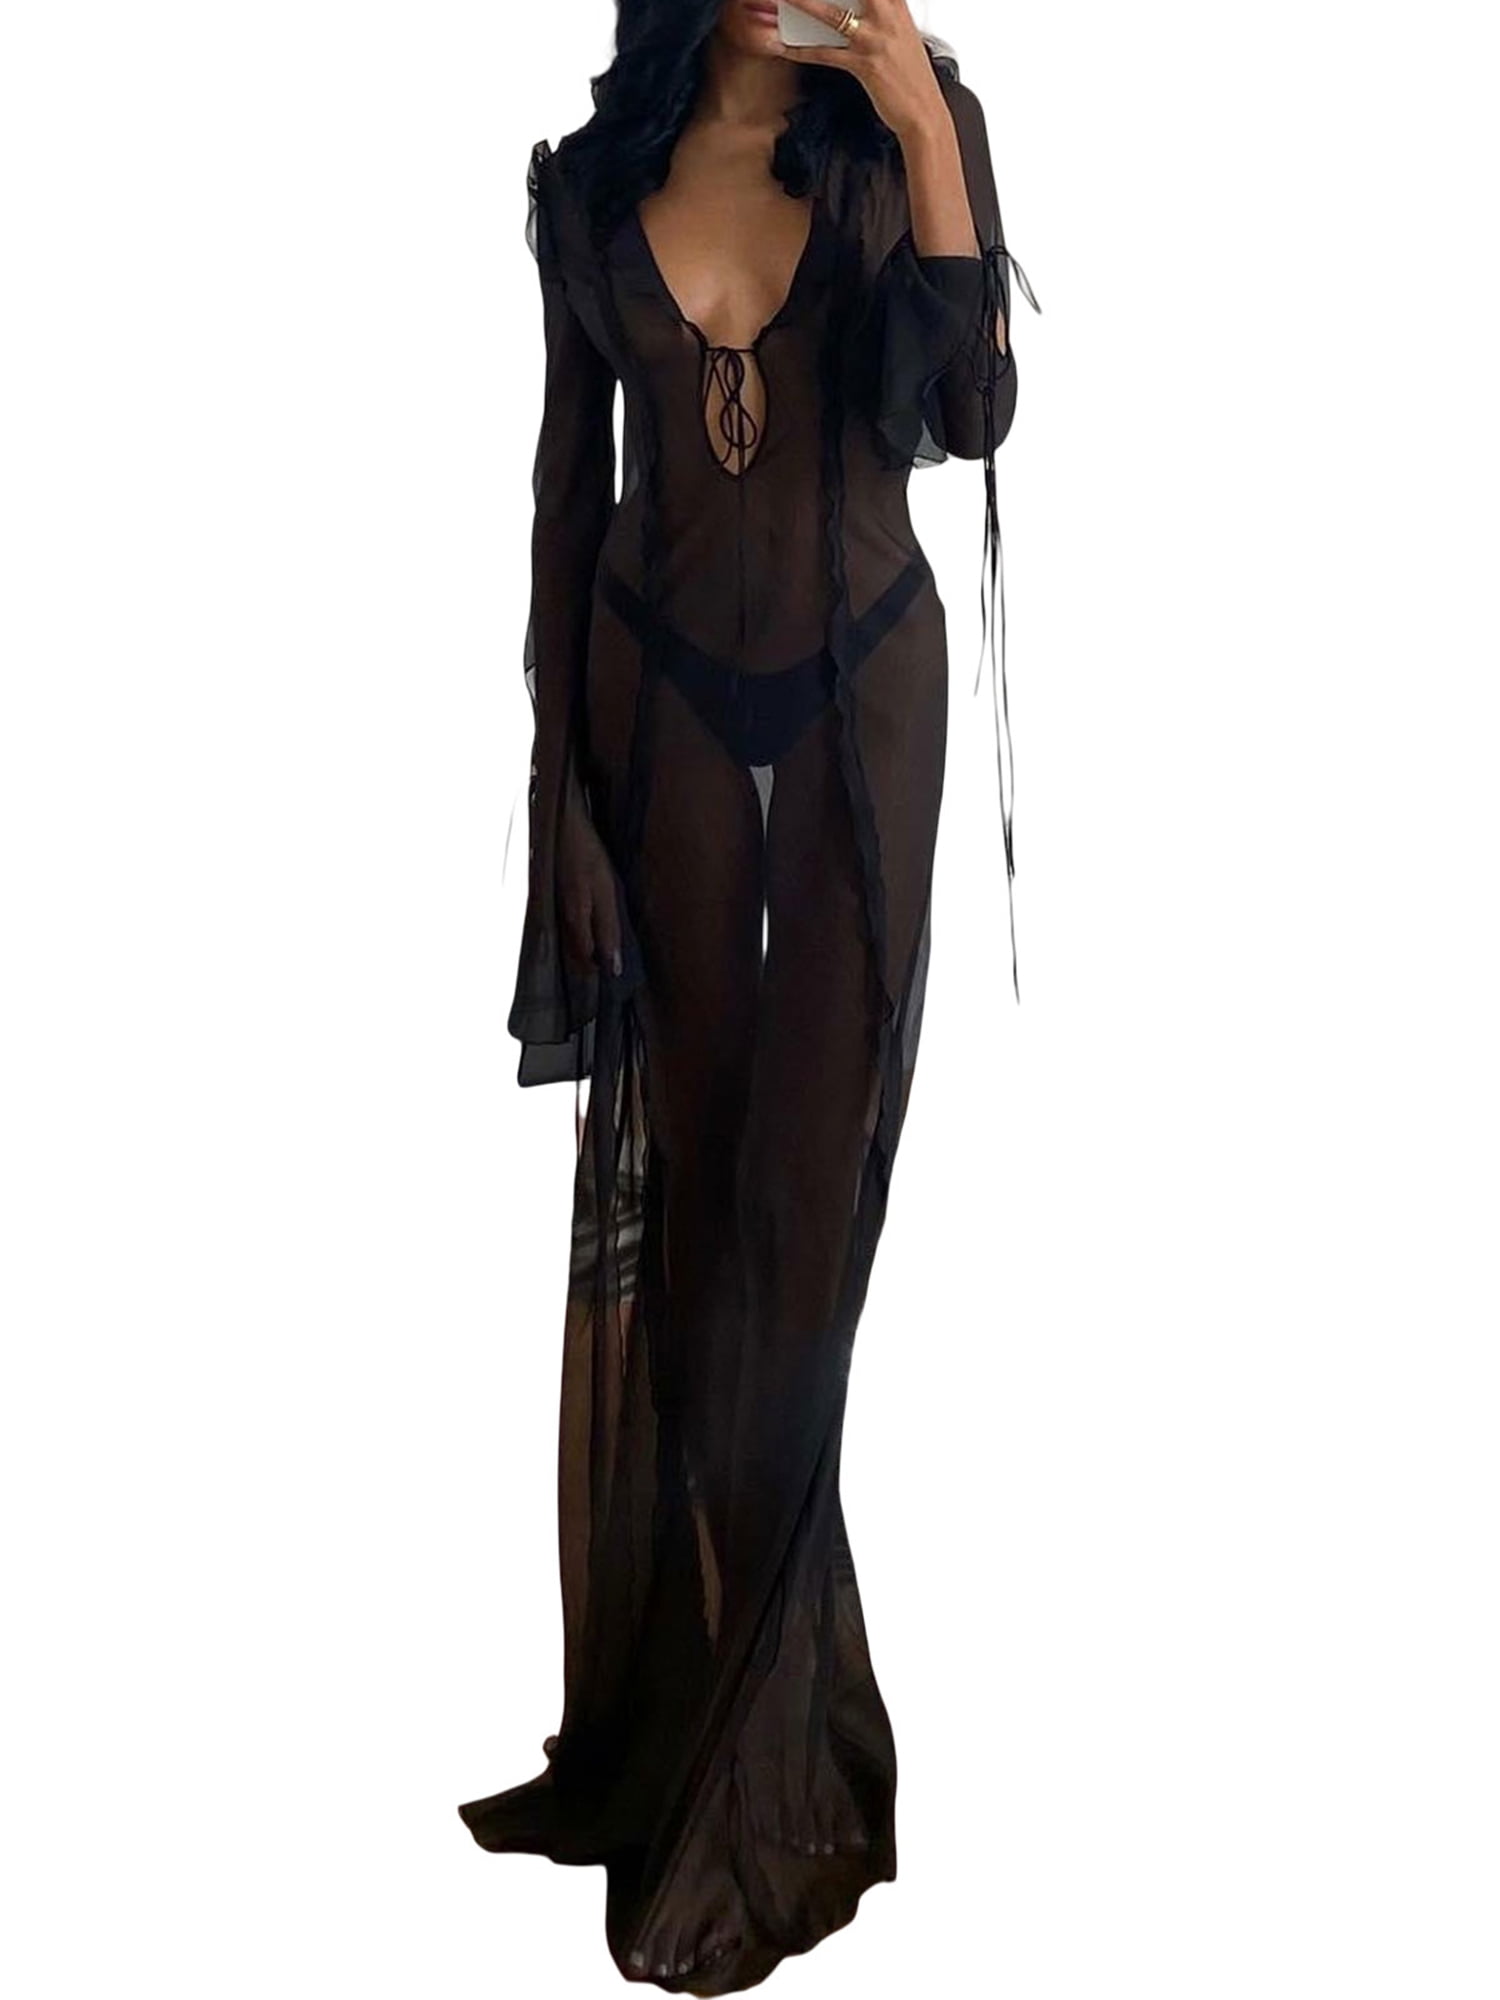 wybzd Women See Through Dress V Neck Sheer Mesh Maxi Dress Side Split  Bikini Cover Up Slit for Beachwear Black M 